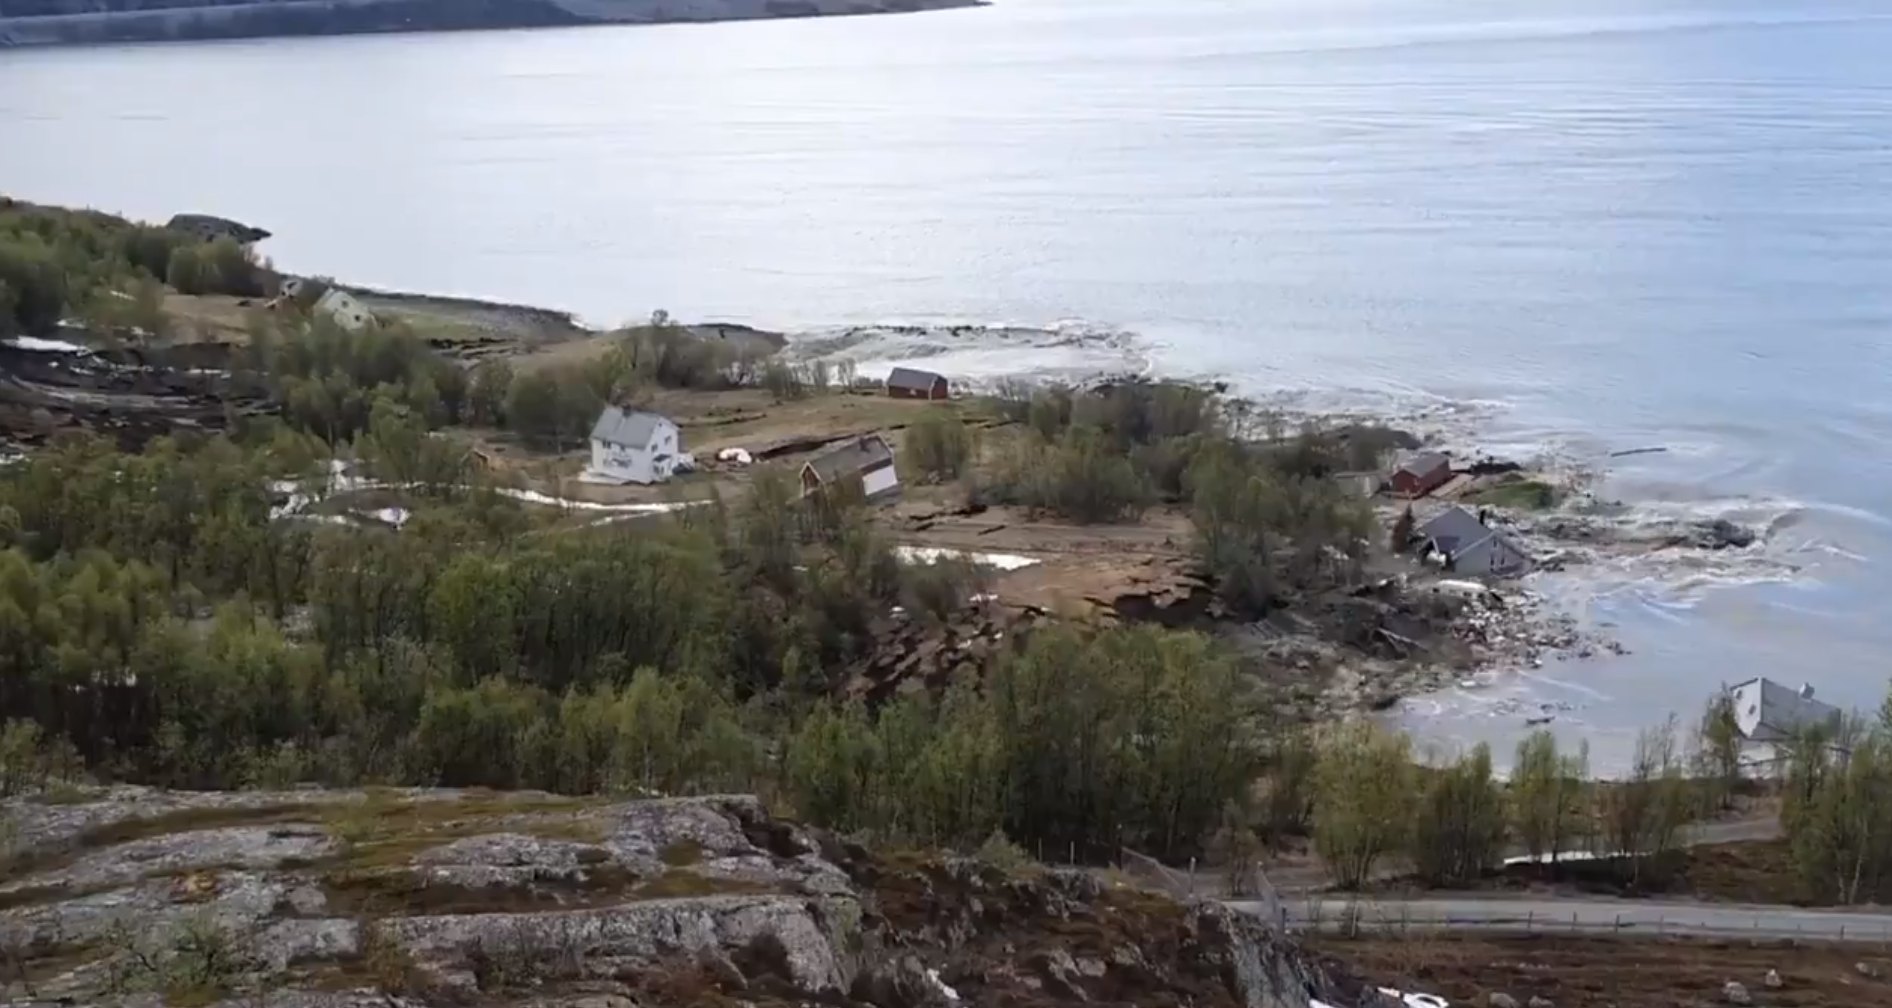 Moć prirode: Zastrašujuć video otkrio trenutak kad je val blata odvukao osam kuća u more...